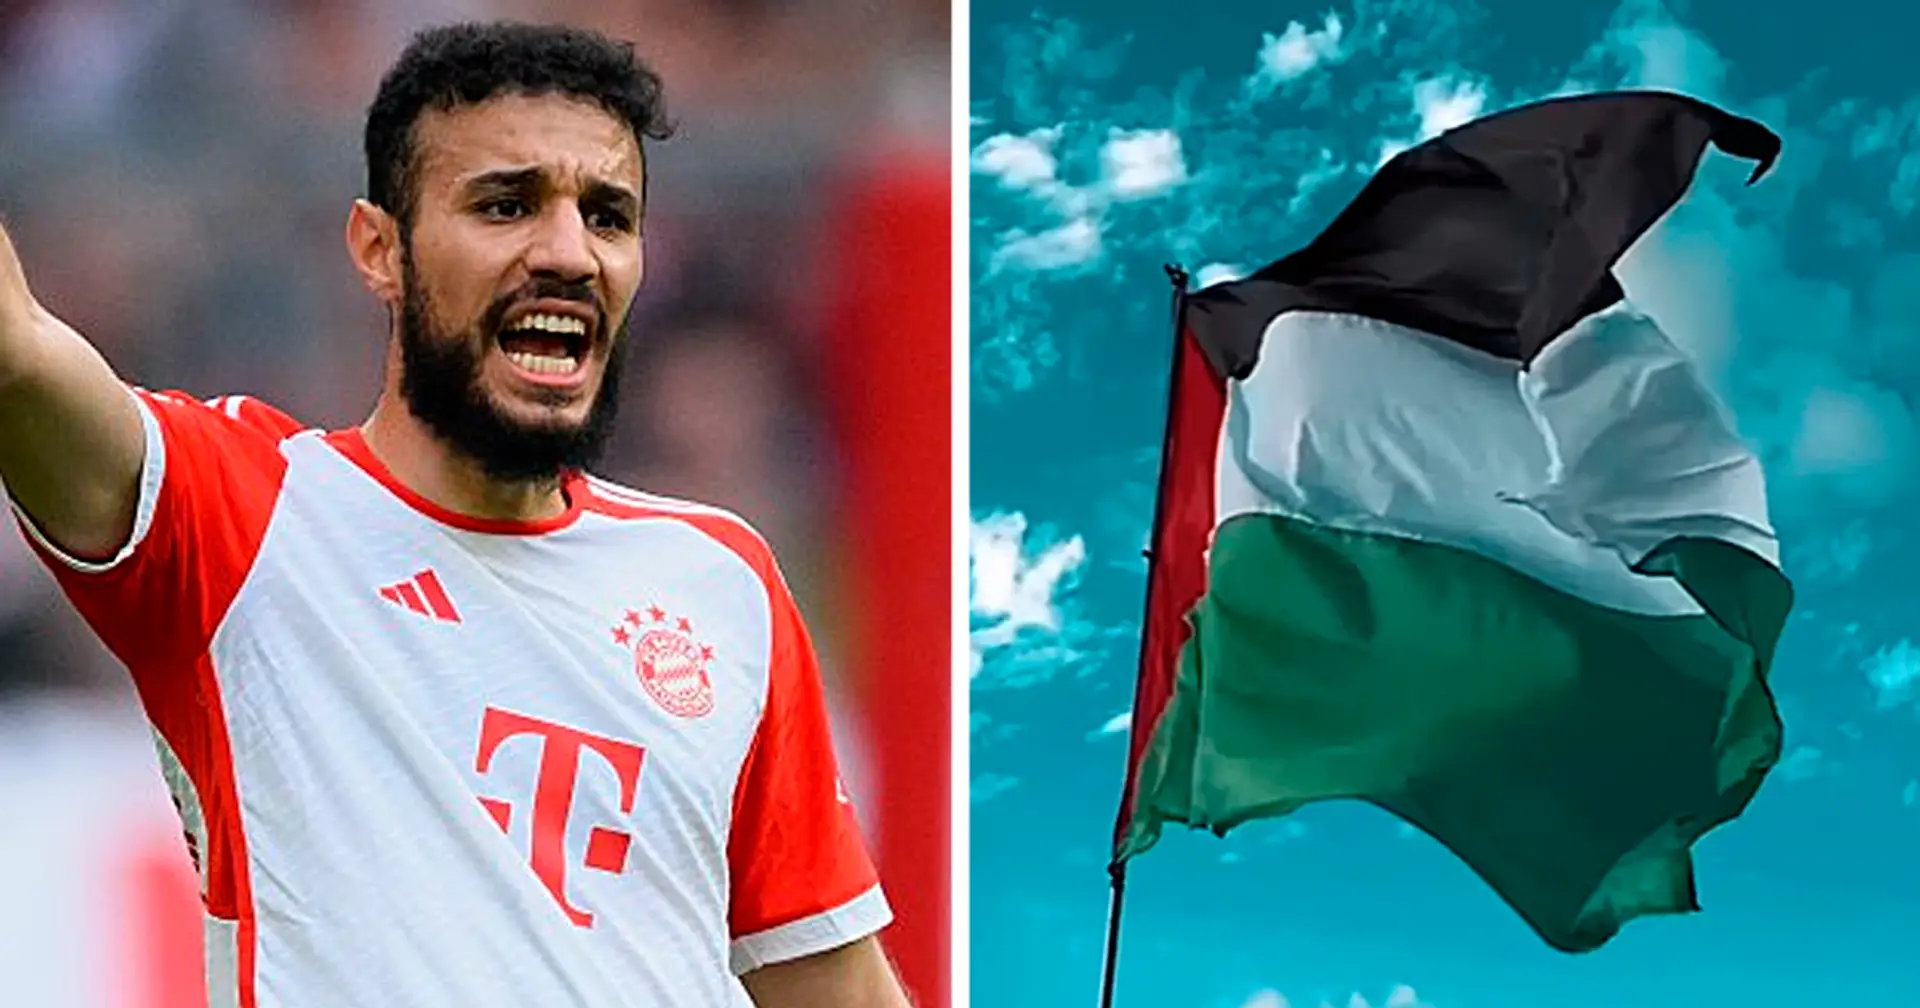 Hitzlsperger kritisiert Bayern für Umgang mit Mazraoui nach Pro-Palästina-Posts: "Vereine werden immer einen Weg finden, um den Spieler zu behalten"